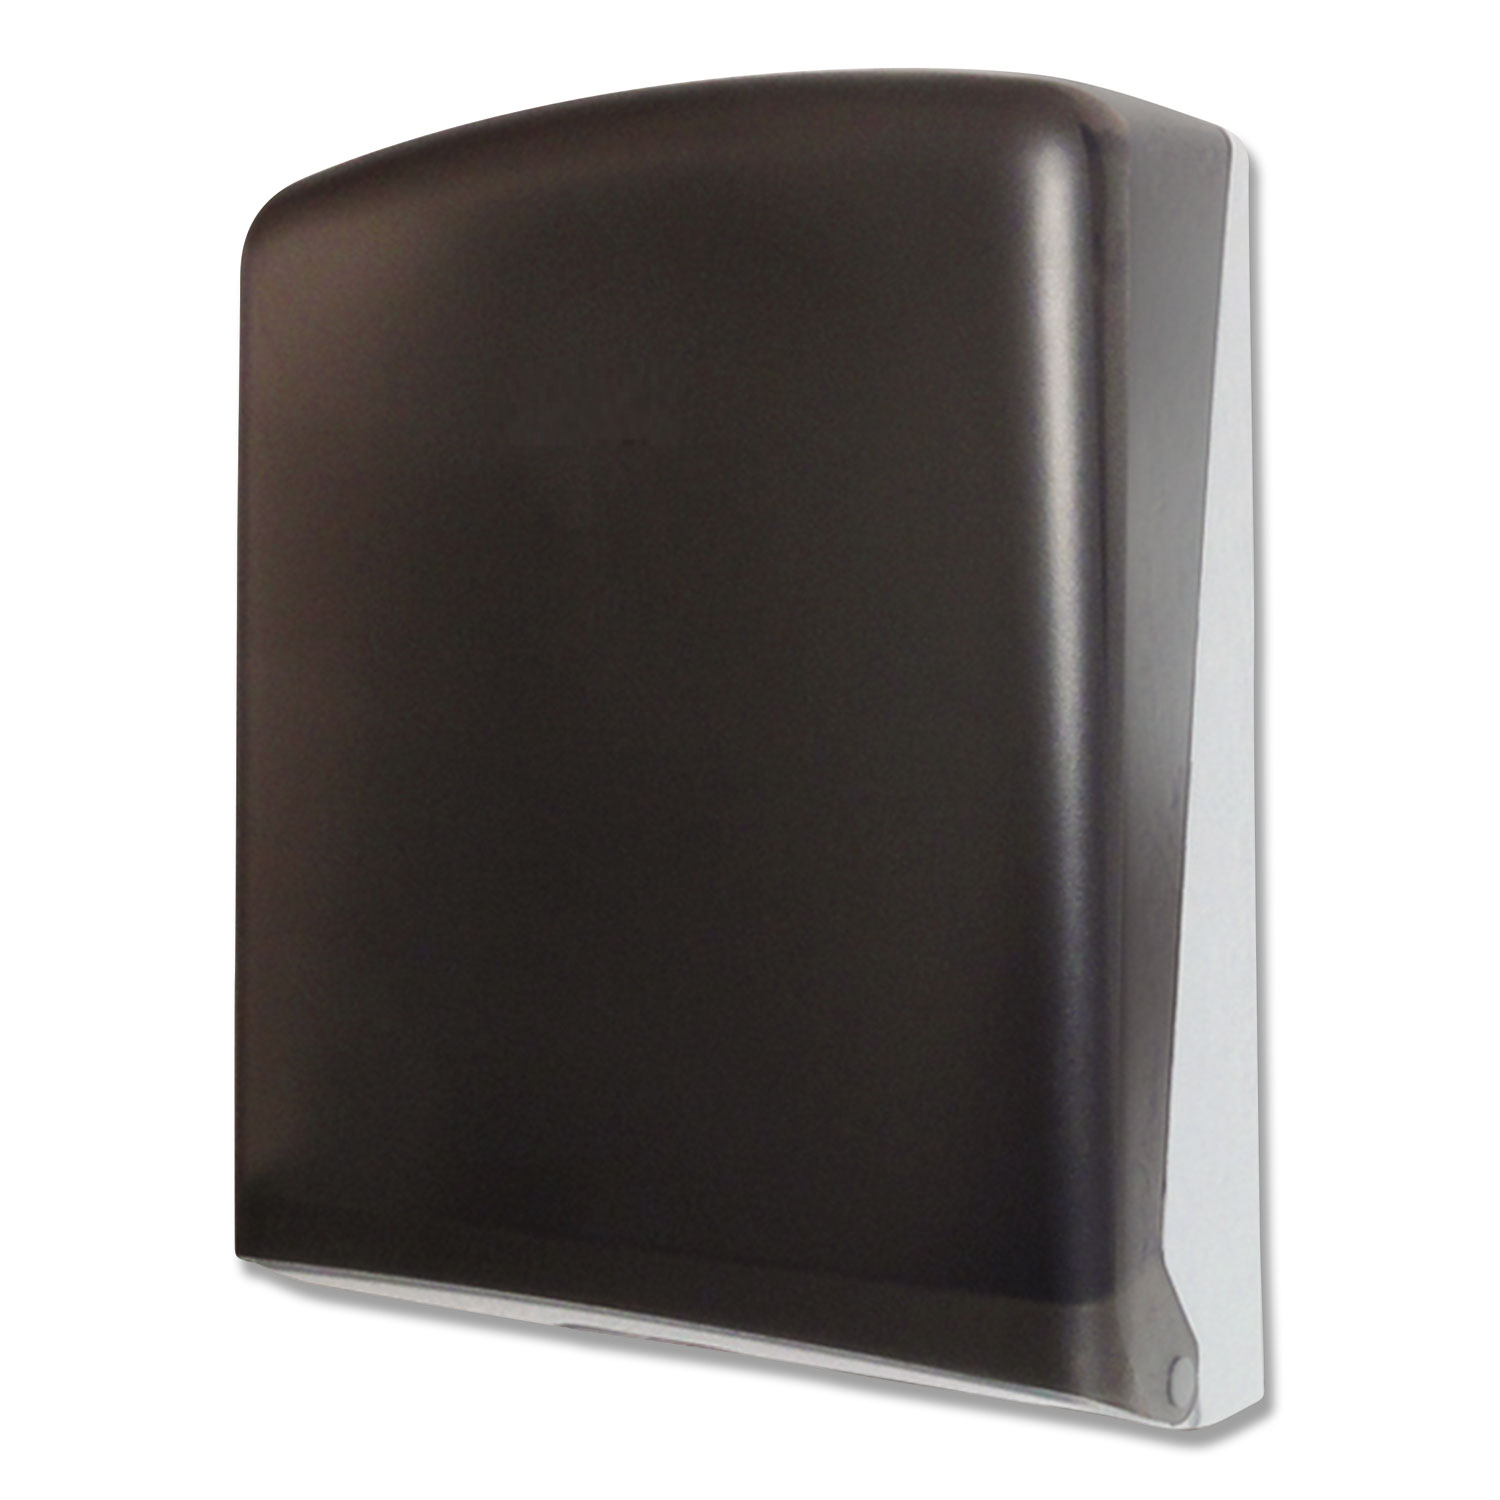  GEN 330-02 Folded Towel Dispenser, 11 x 4 1/2 x 14, Smoke (GEN1608) 